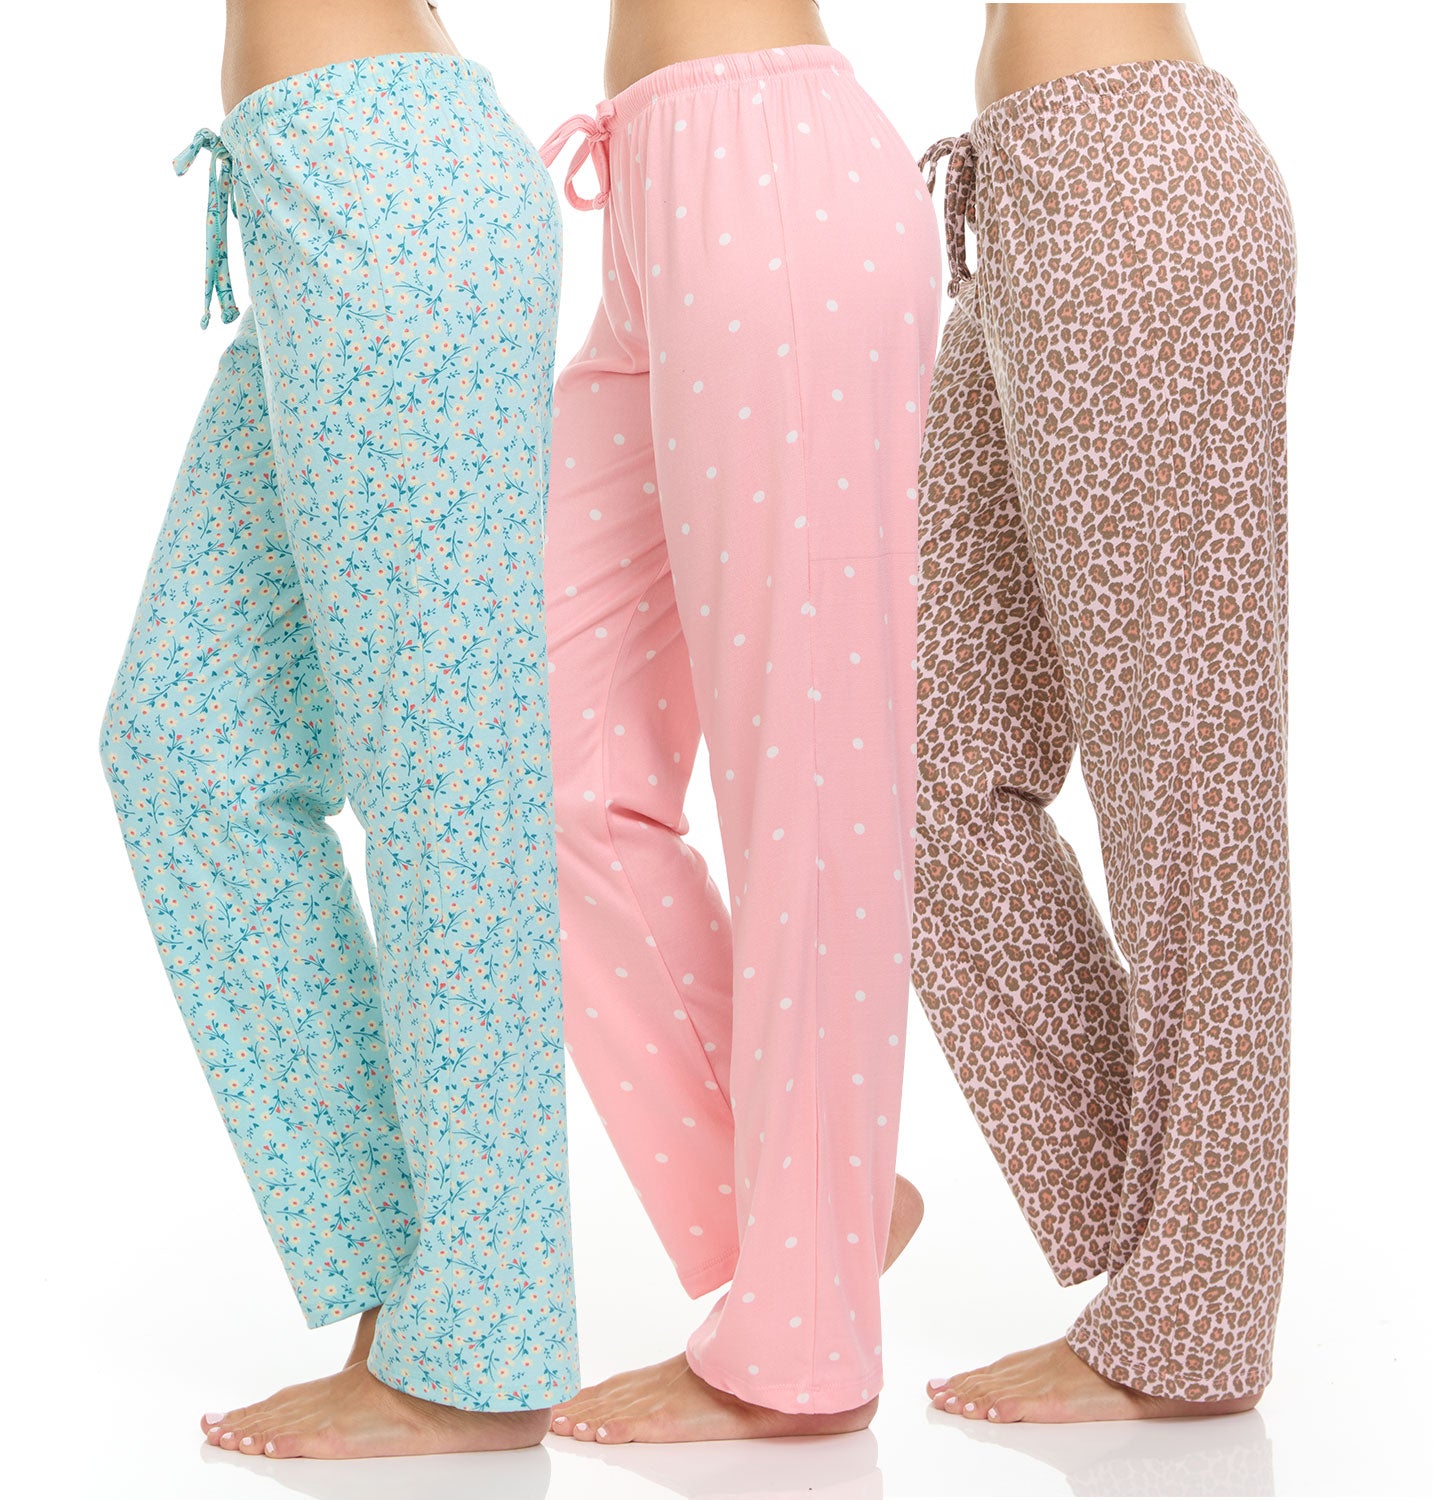 DARESAY Women's Printed Lounge Pants – Comfortable Long Pajama